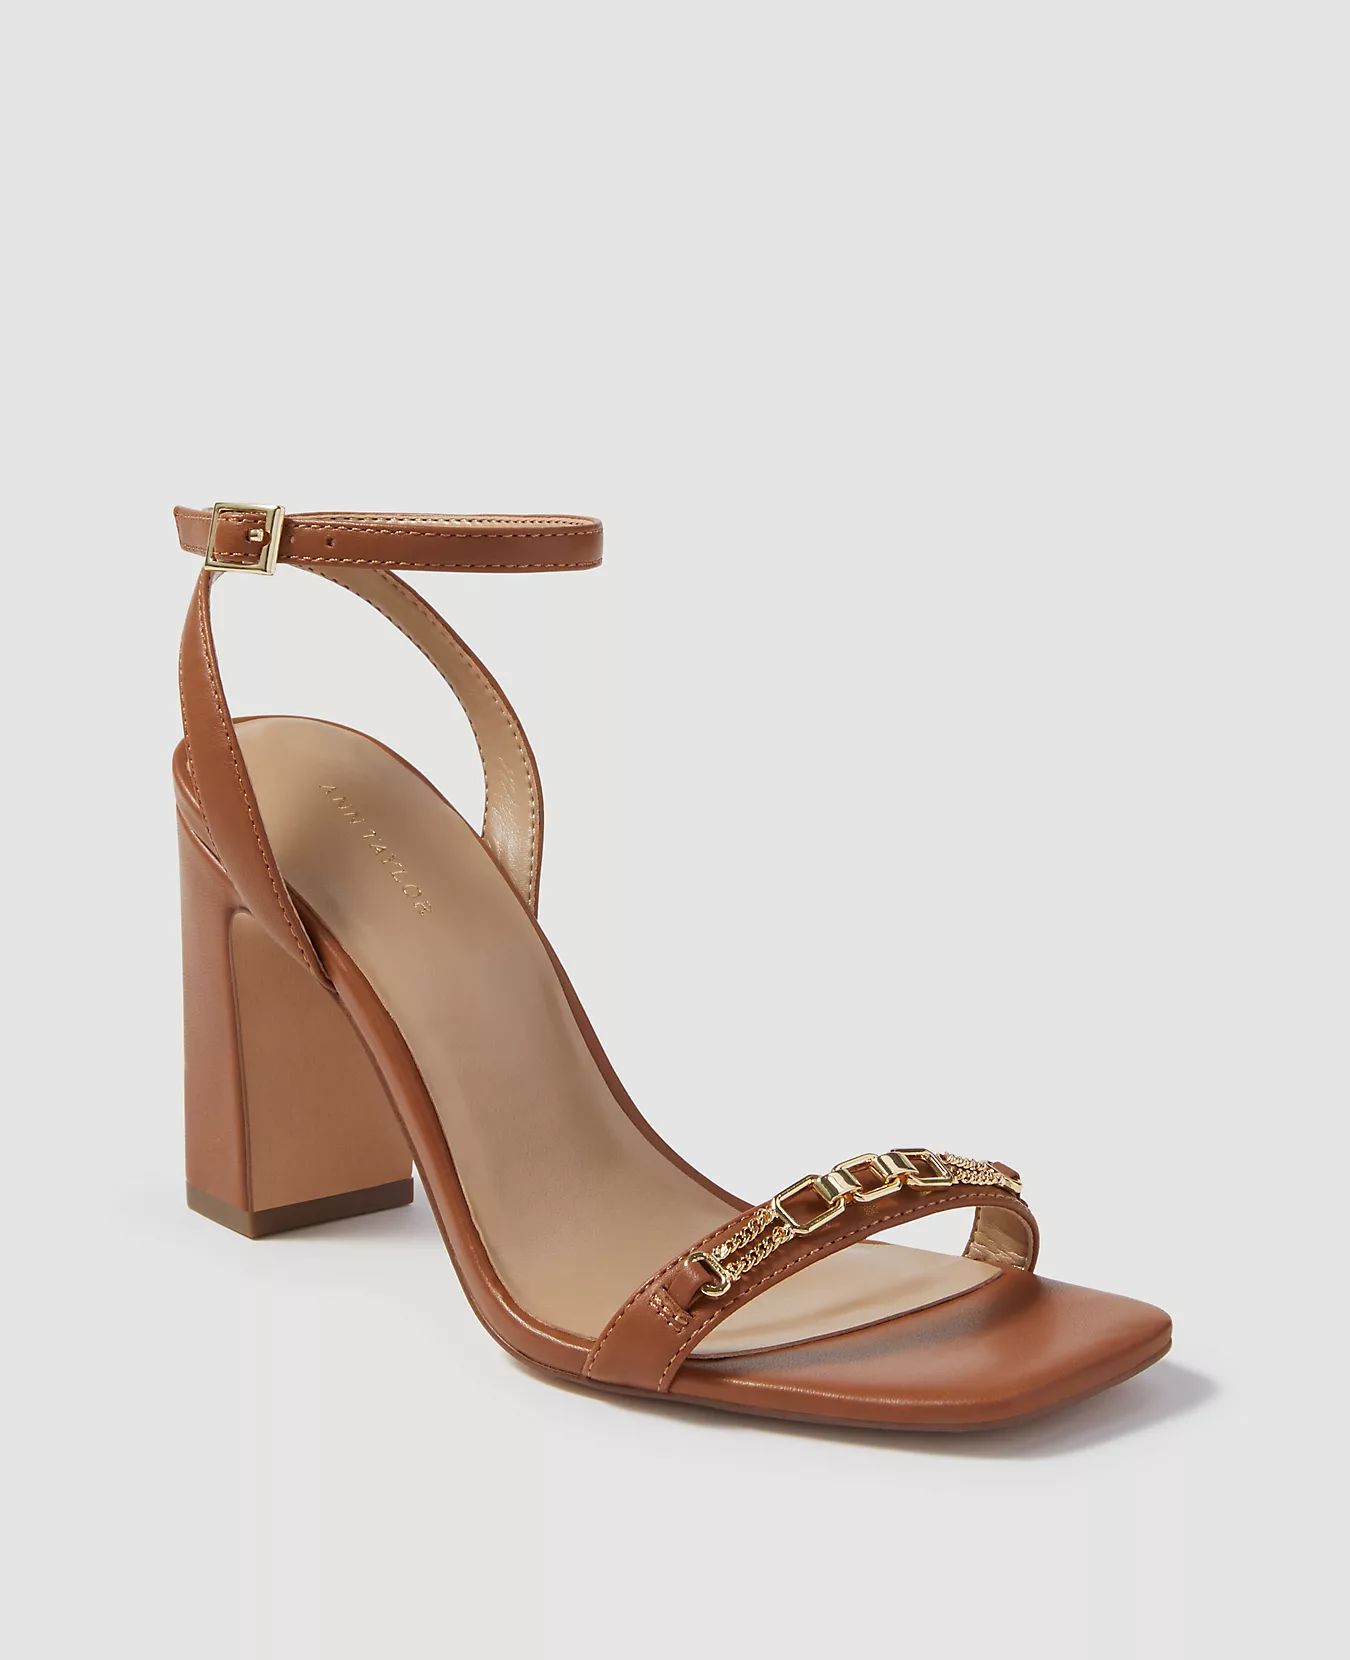 Yasmine Leather Chain High Heel Sandals | Ann Taylor | Ann Taylor (US)